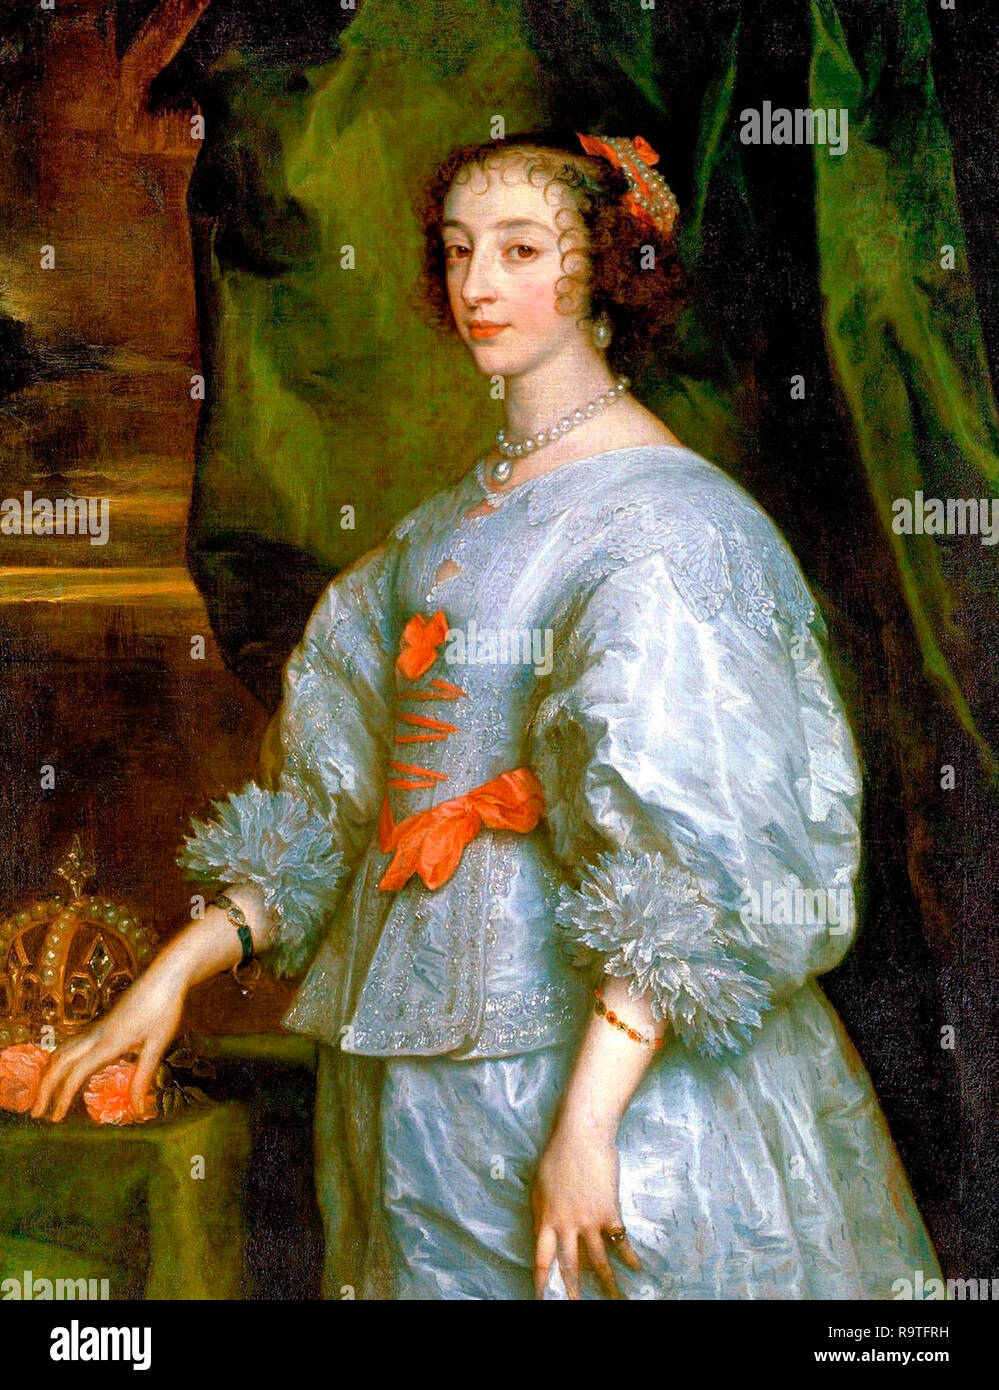 Prinzessin Henrietta Maria von Frankreich, Königin von England. Dies ist das erste Portrait von Henrietta Maria von Anthony van Dyck 1632 gemalt. Stockfoto